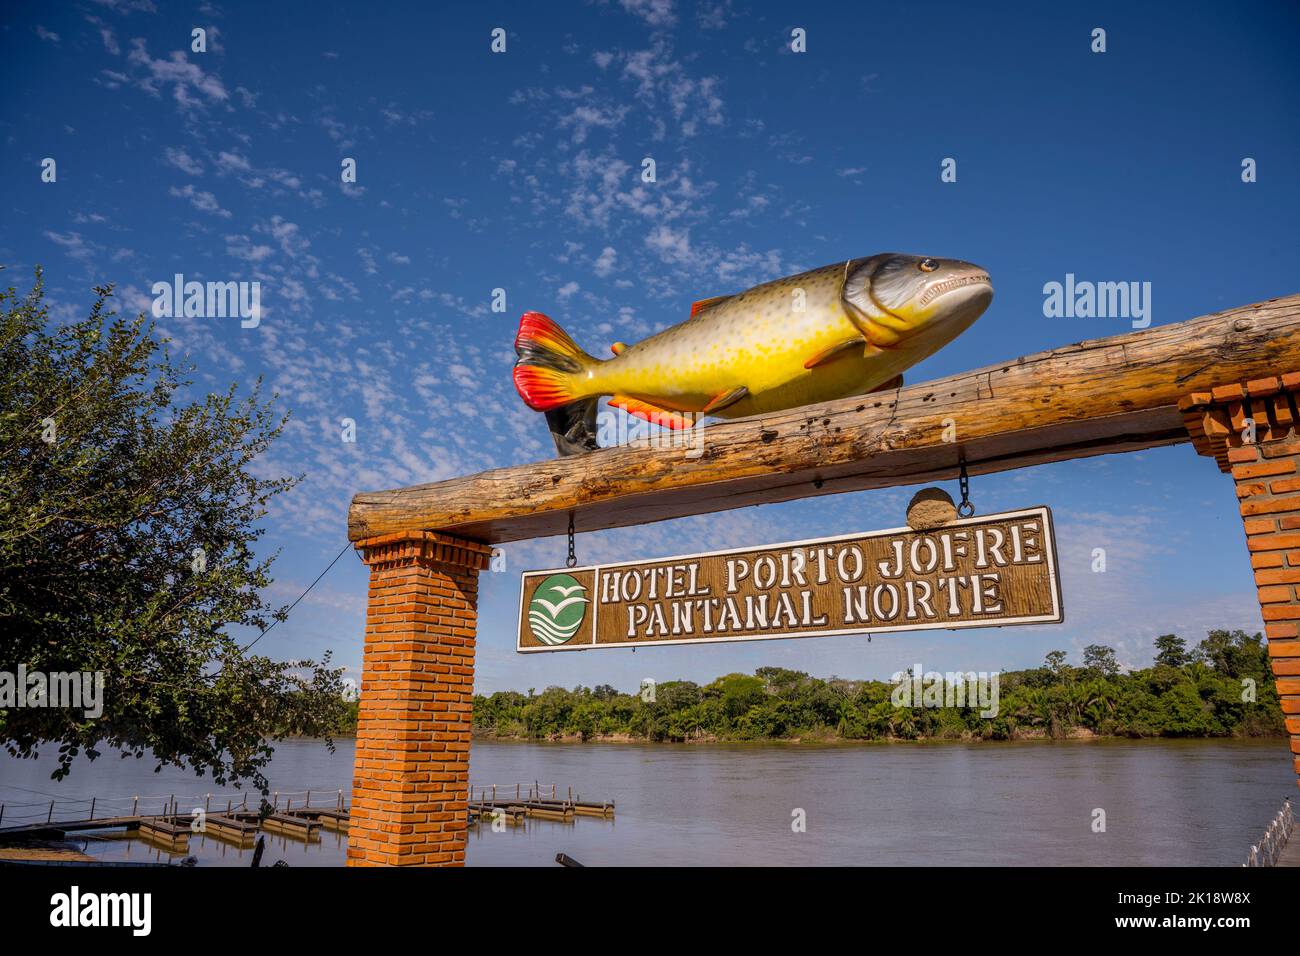 Un pesce gigante in cima alla porta del molo dell'Hotel Pantanal Norte presso il fiume Cuiaba a Porto Jofre nel nord di Pantanal, Mato Grosso prov Foto Stock